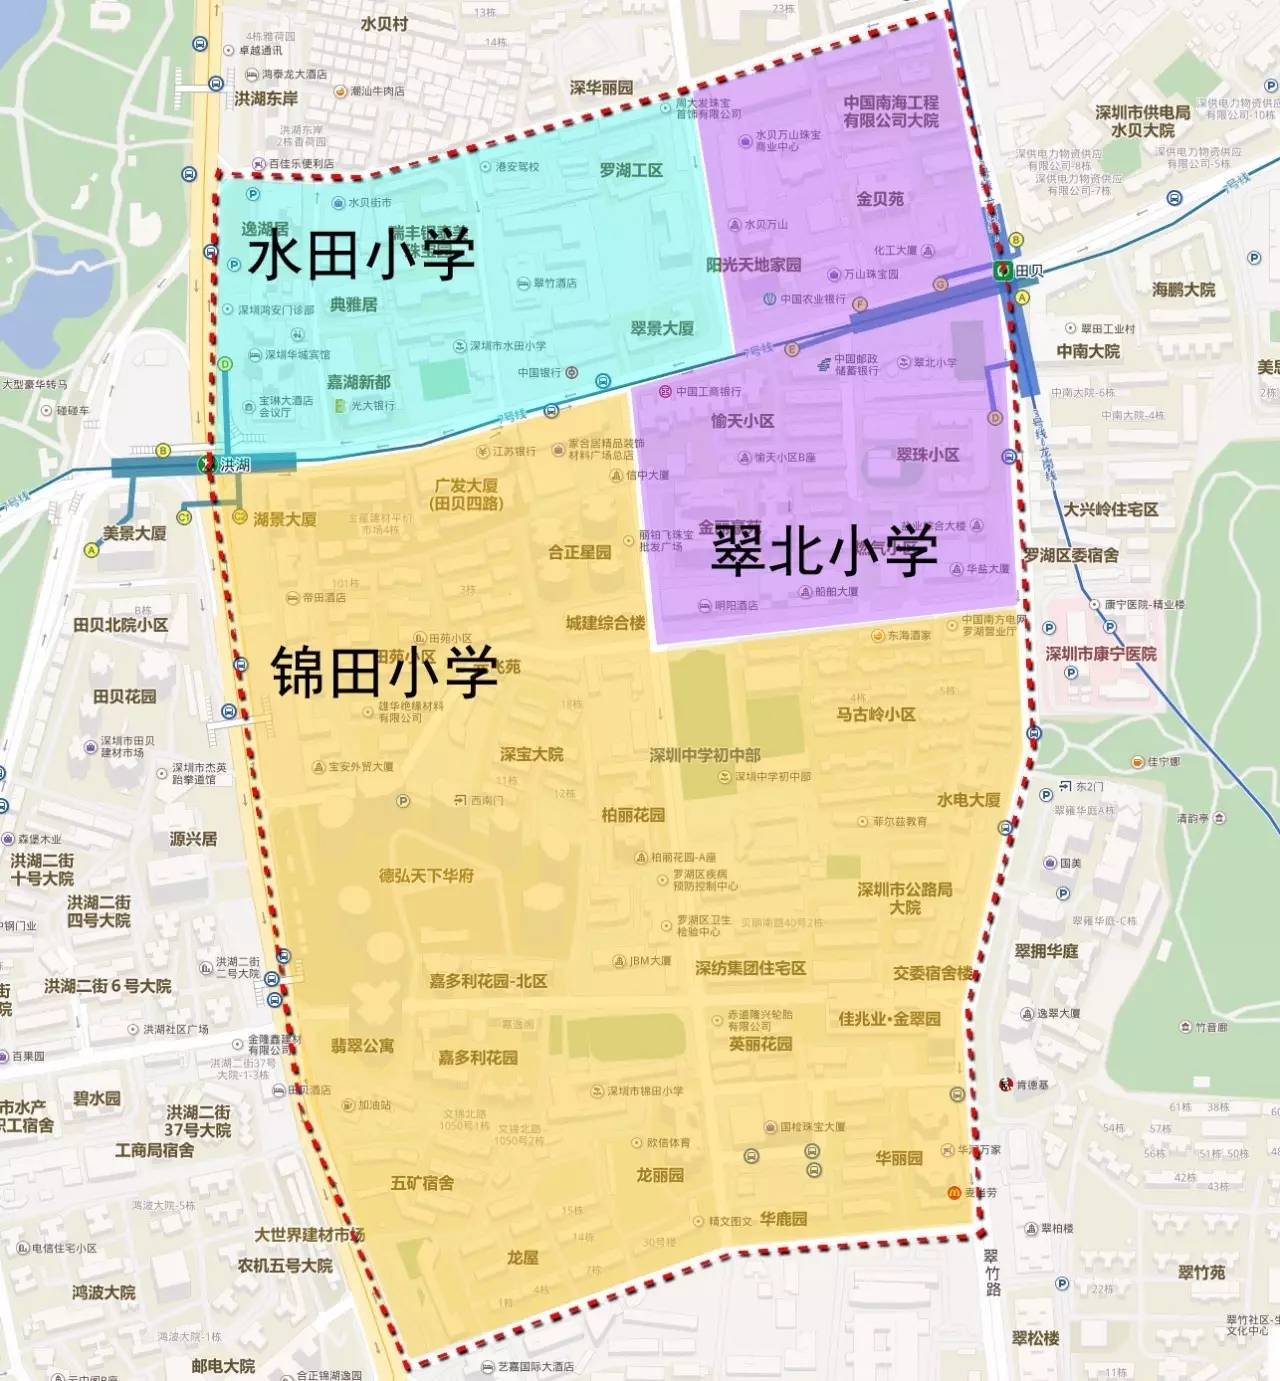 各个学校所在片区的情况   01      上图红框内为深圳中学初中部学区